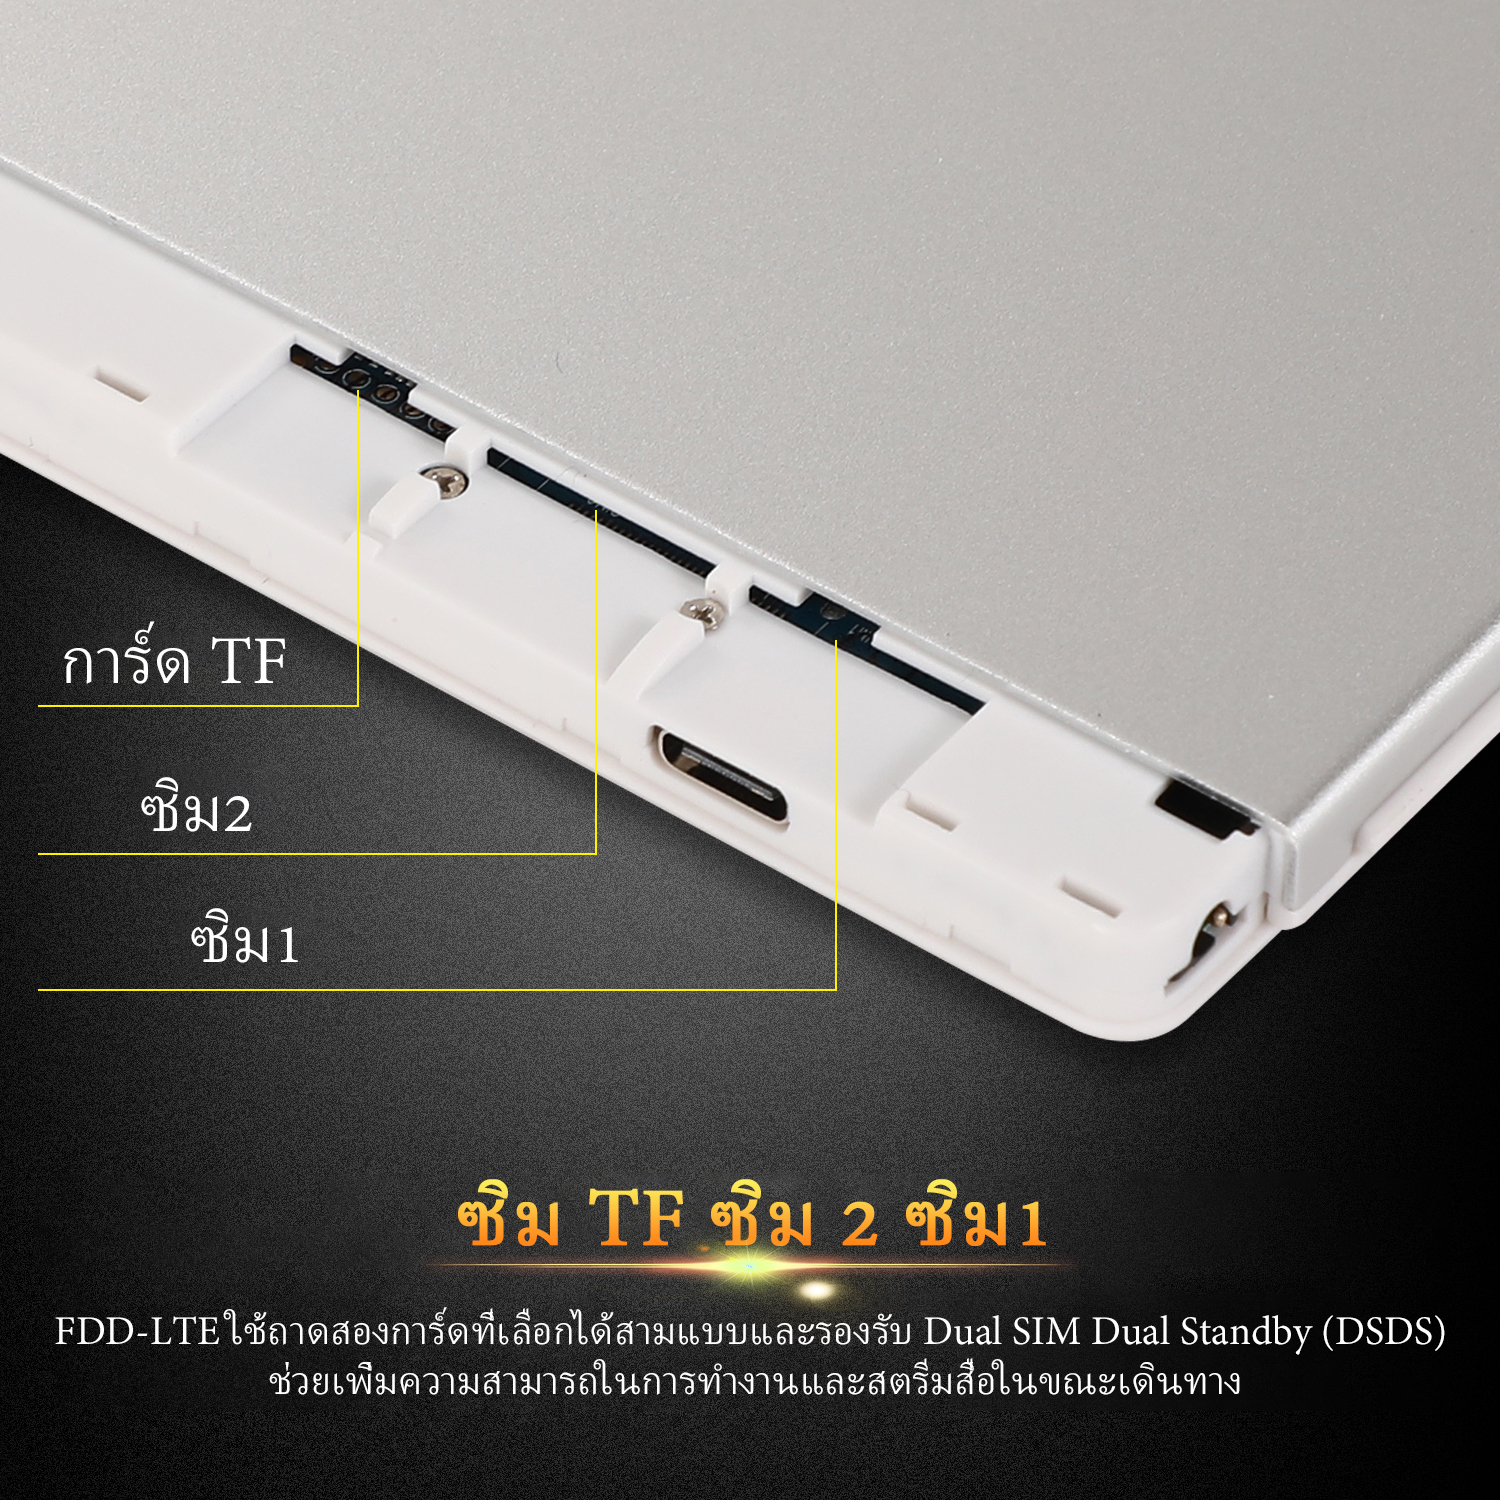 ภาพที่ให้รายละเอียดเกี่ยวกับ ใหม่ Tablet Xiaomi Pad 5 แท็บเล็ต RAM12G ROM512G 10.1นิ้ว โทรได้ แท็บเล็ตถูกๆ แท็บเล็ตราคาถูก Andorid 10.0 Tablet จัดส่งฟรี รองรับภาษาไทย หน่วยประมวลผล 10-core แท็บเล็ตโทรได้ แท็บเล็ตสำหรับเล่นเกมราคาถูก แท็บเล็ตราคาถูกๆ แท็บเล็ตราคาถูกรุ่นล่าสุด ไอเเพ็ด